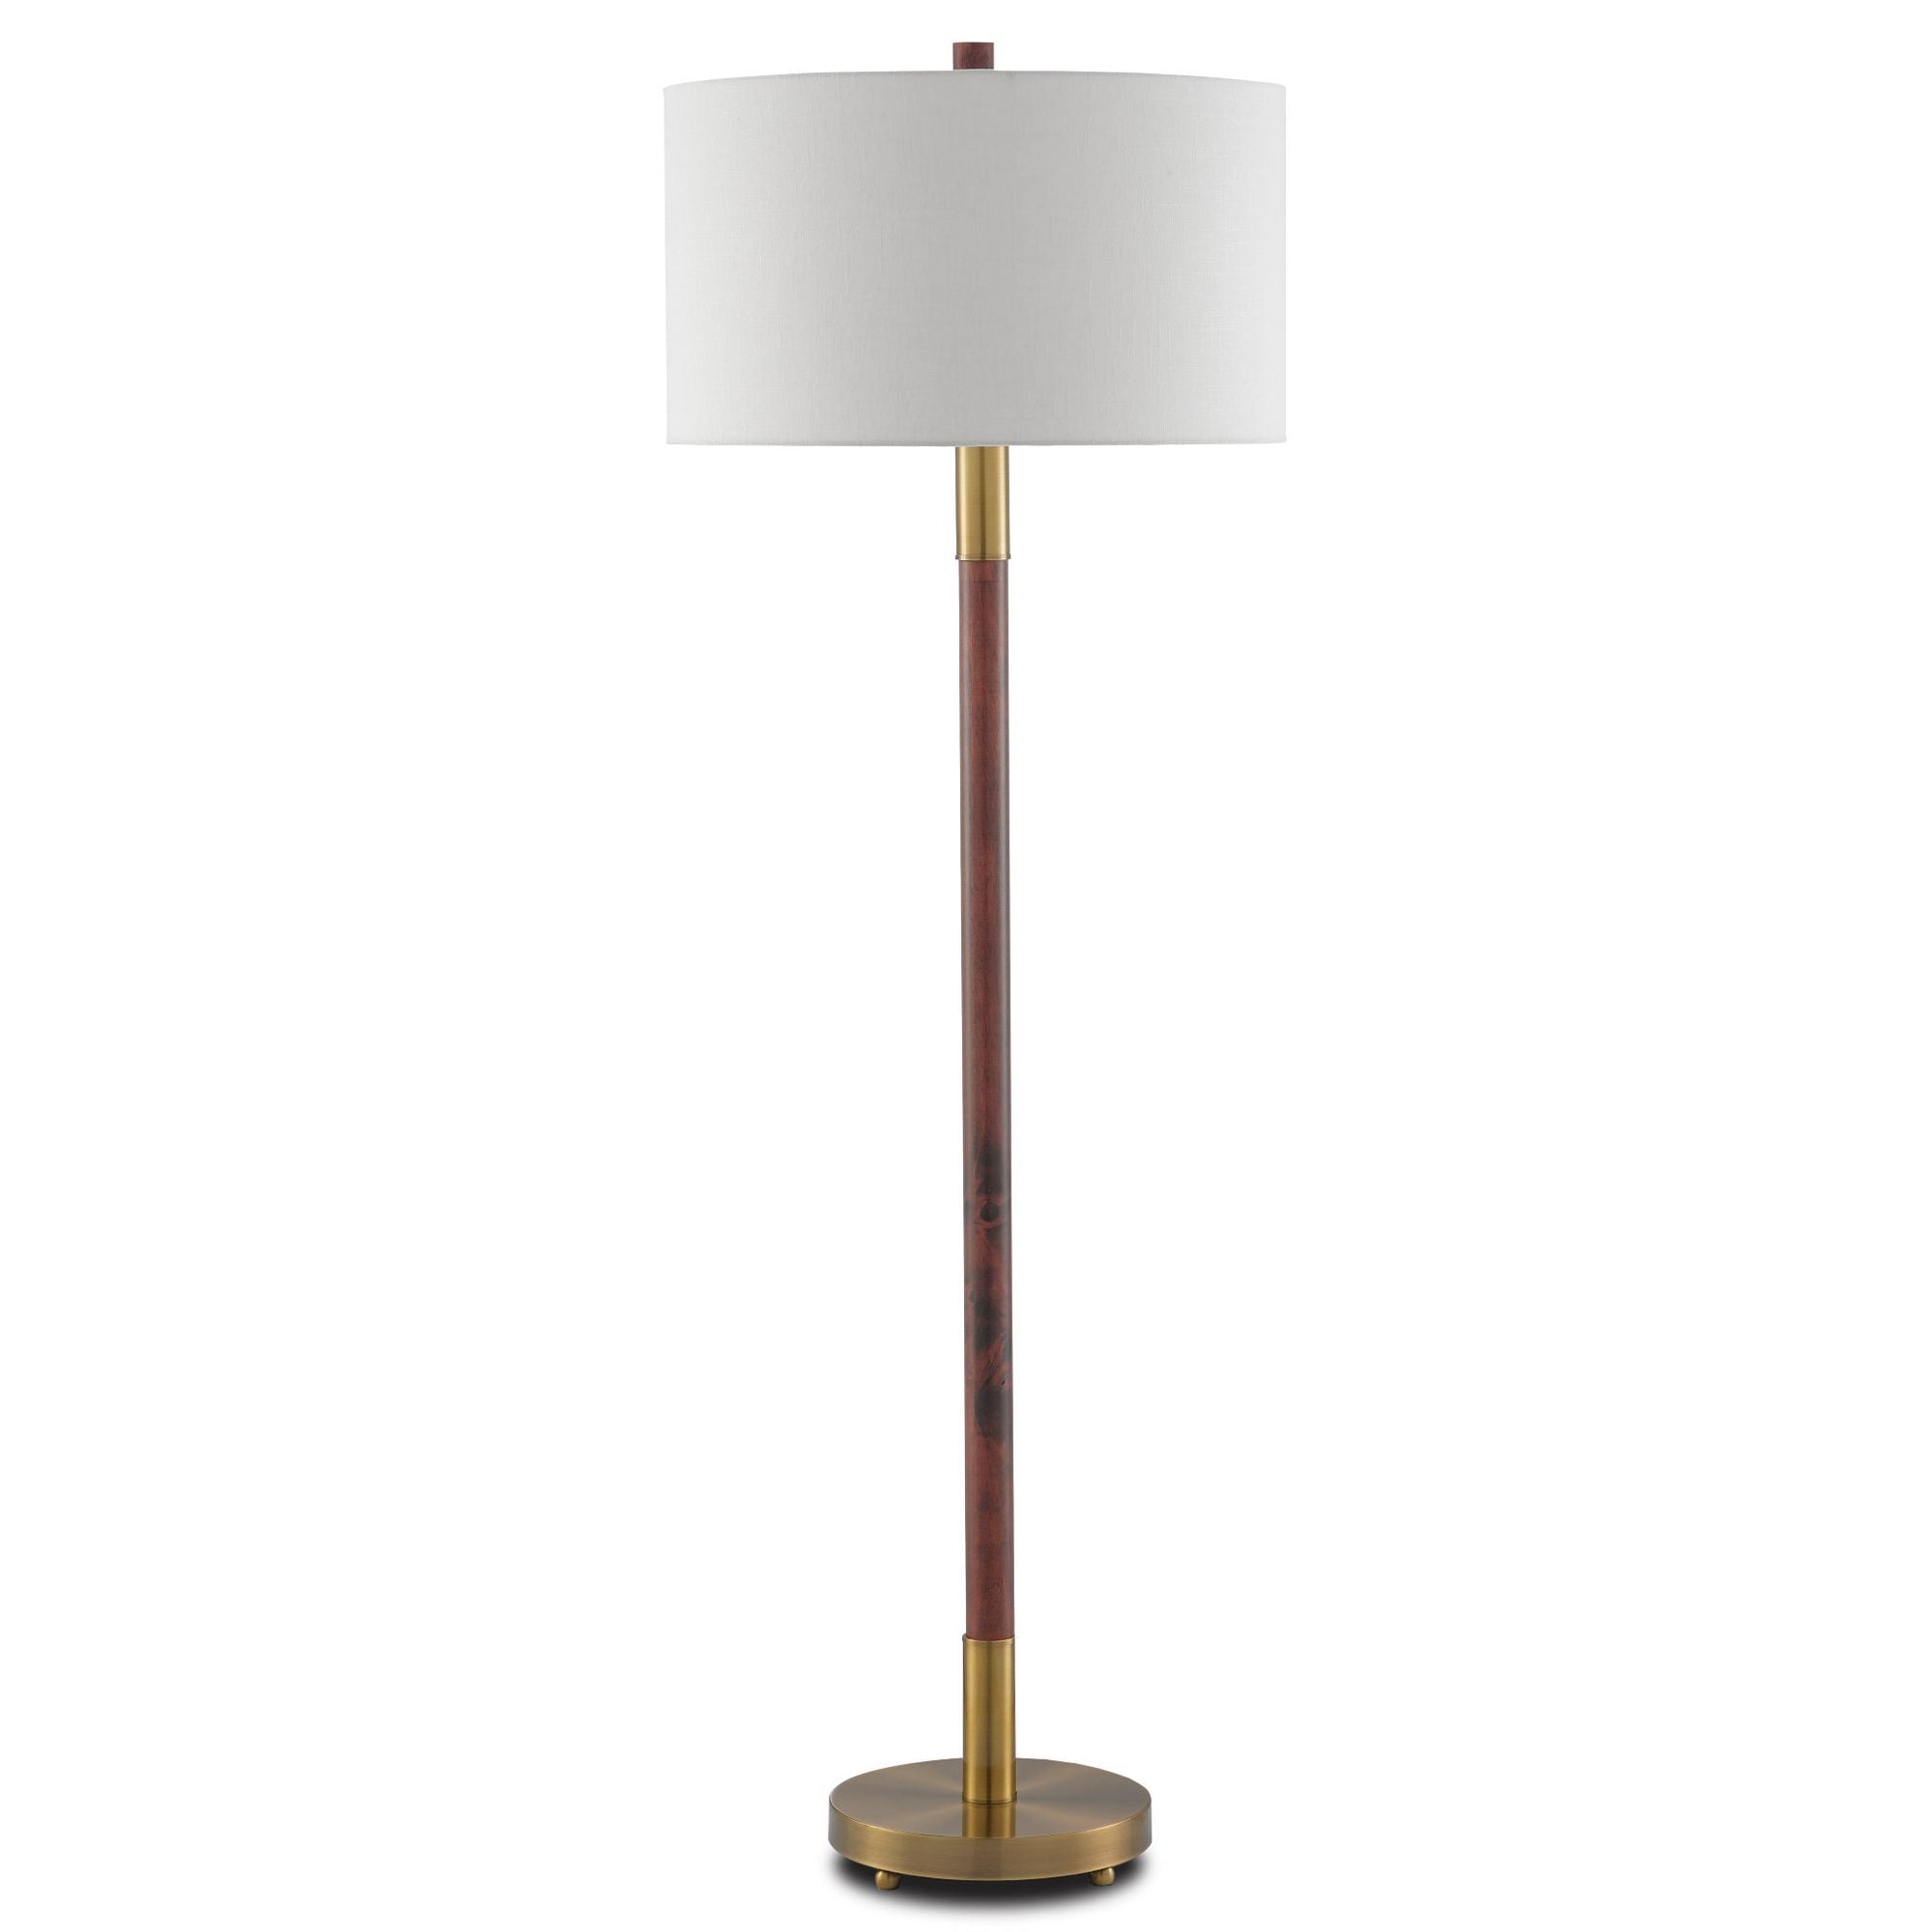 Bravo Mahogany Floor Lamp - Mahogany/Antique Brass